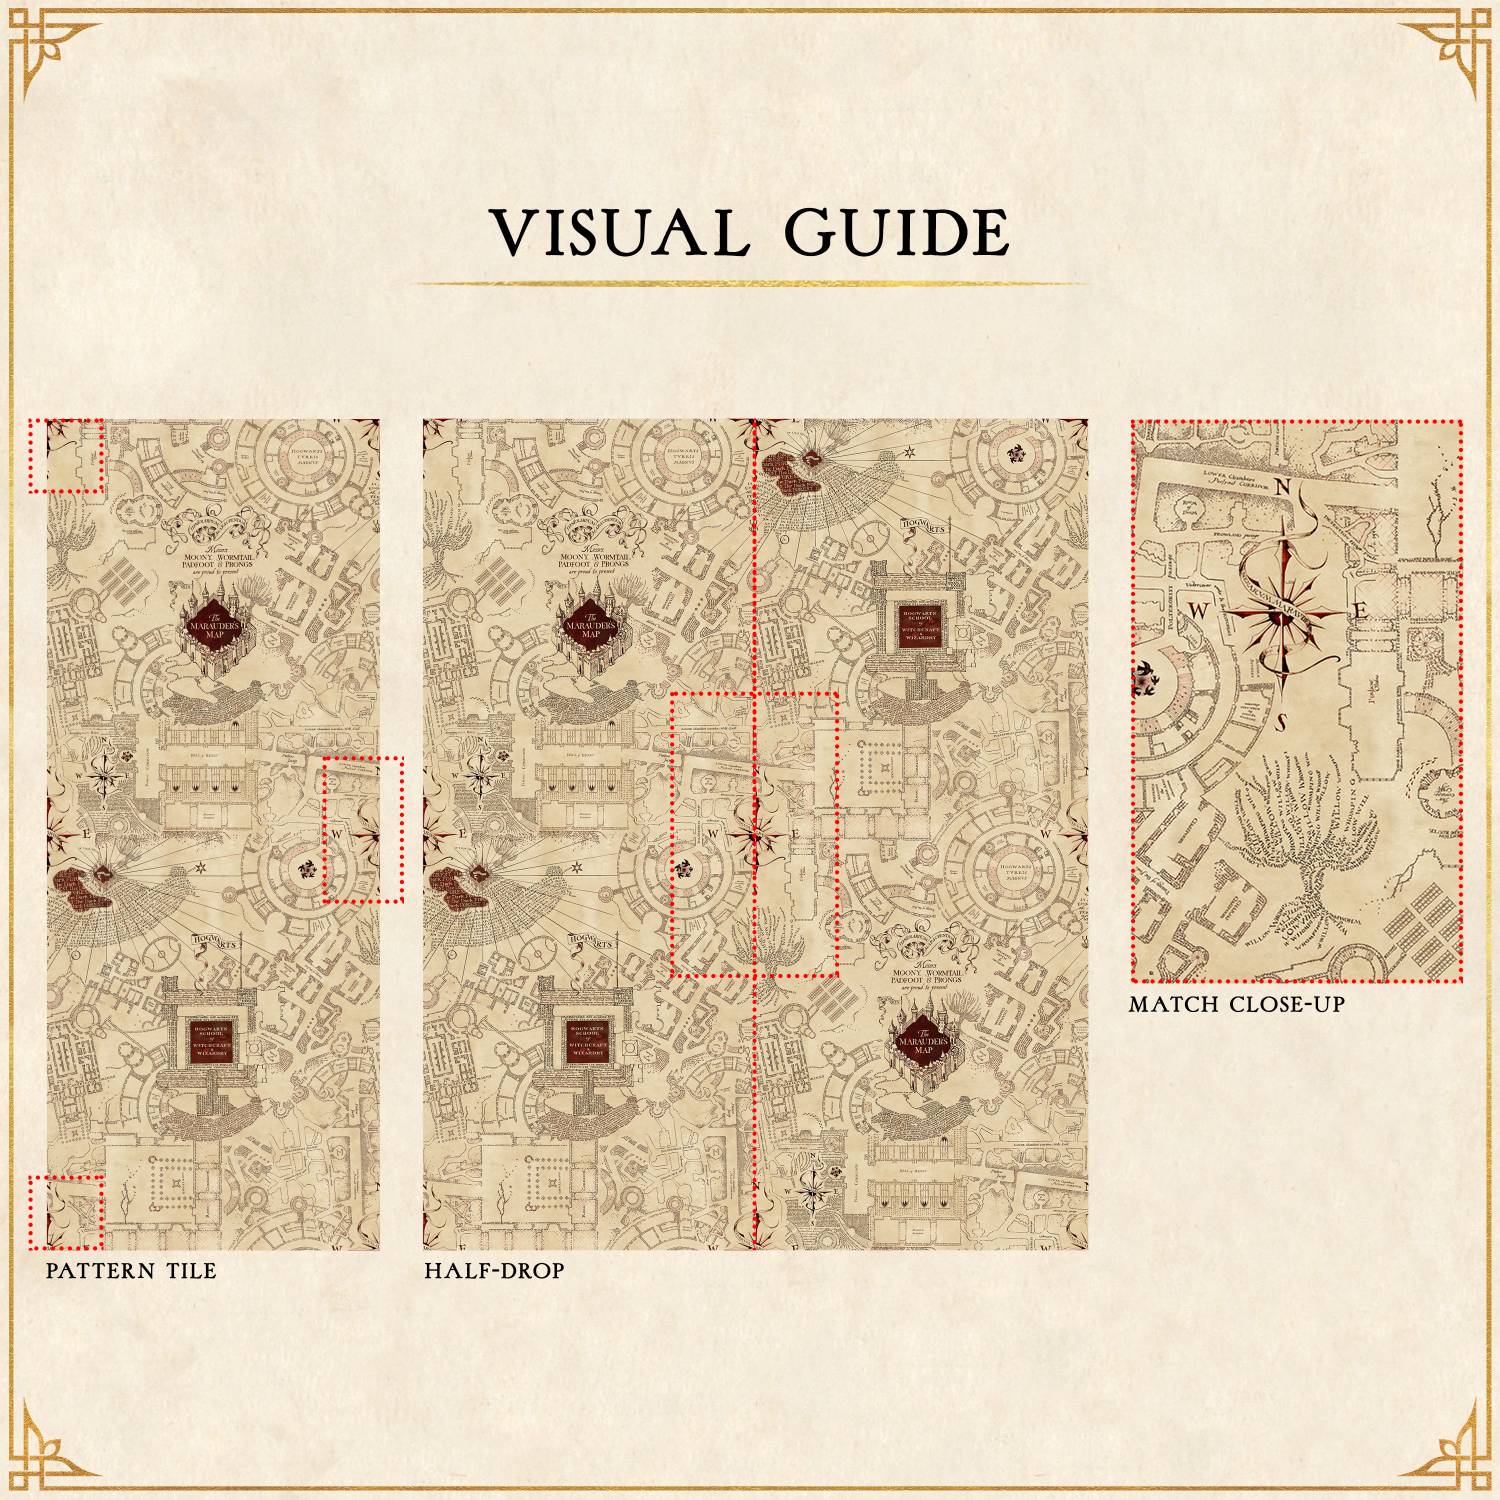 Marauder's Map Wallpaper – Curiosa - Purveyors of Extraordinary Things